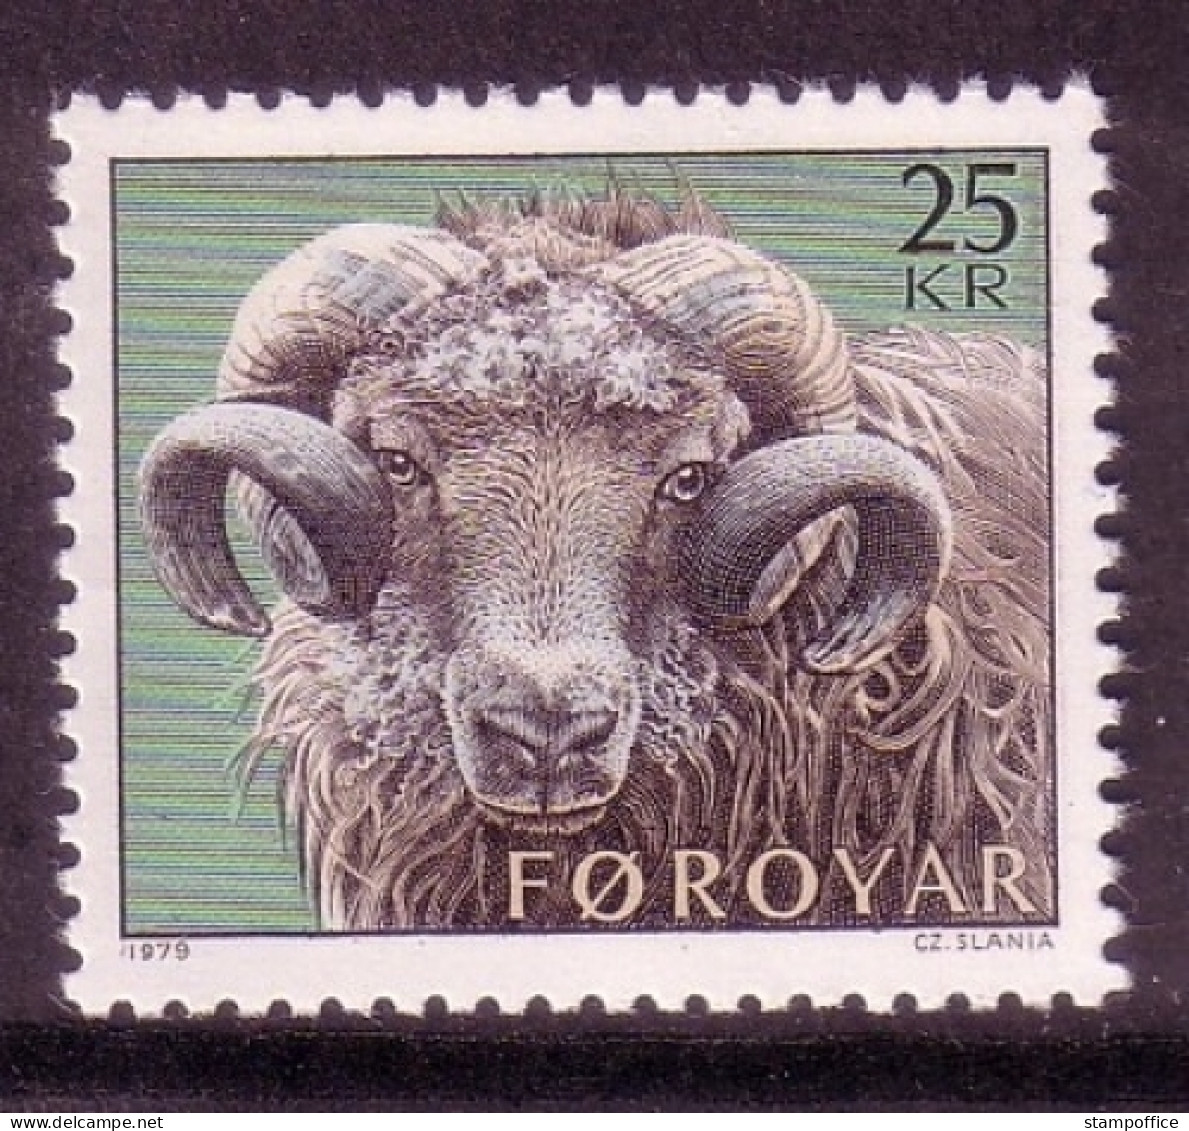 FÄRÖER MI-NR. 42 POSTFRISCH(MINT) SCHAFZUCHT WIDDER 1979 - Färöer Inseln